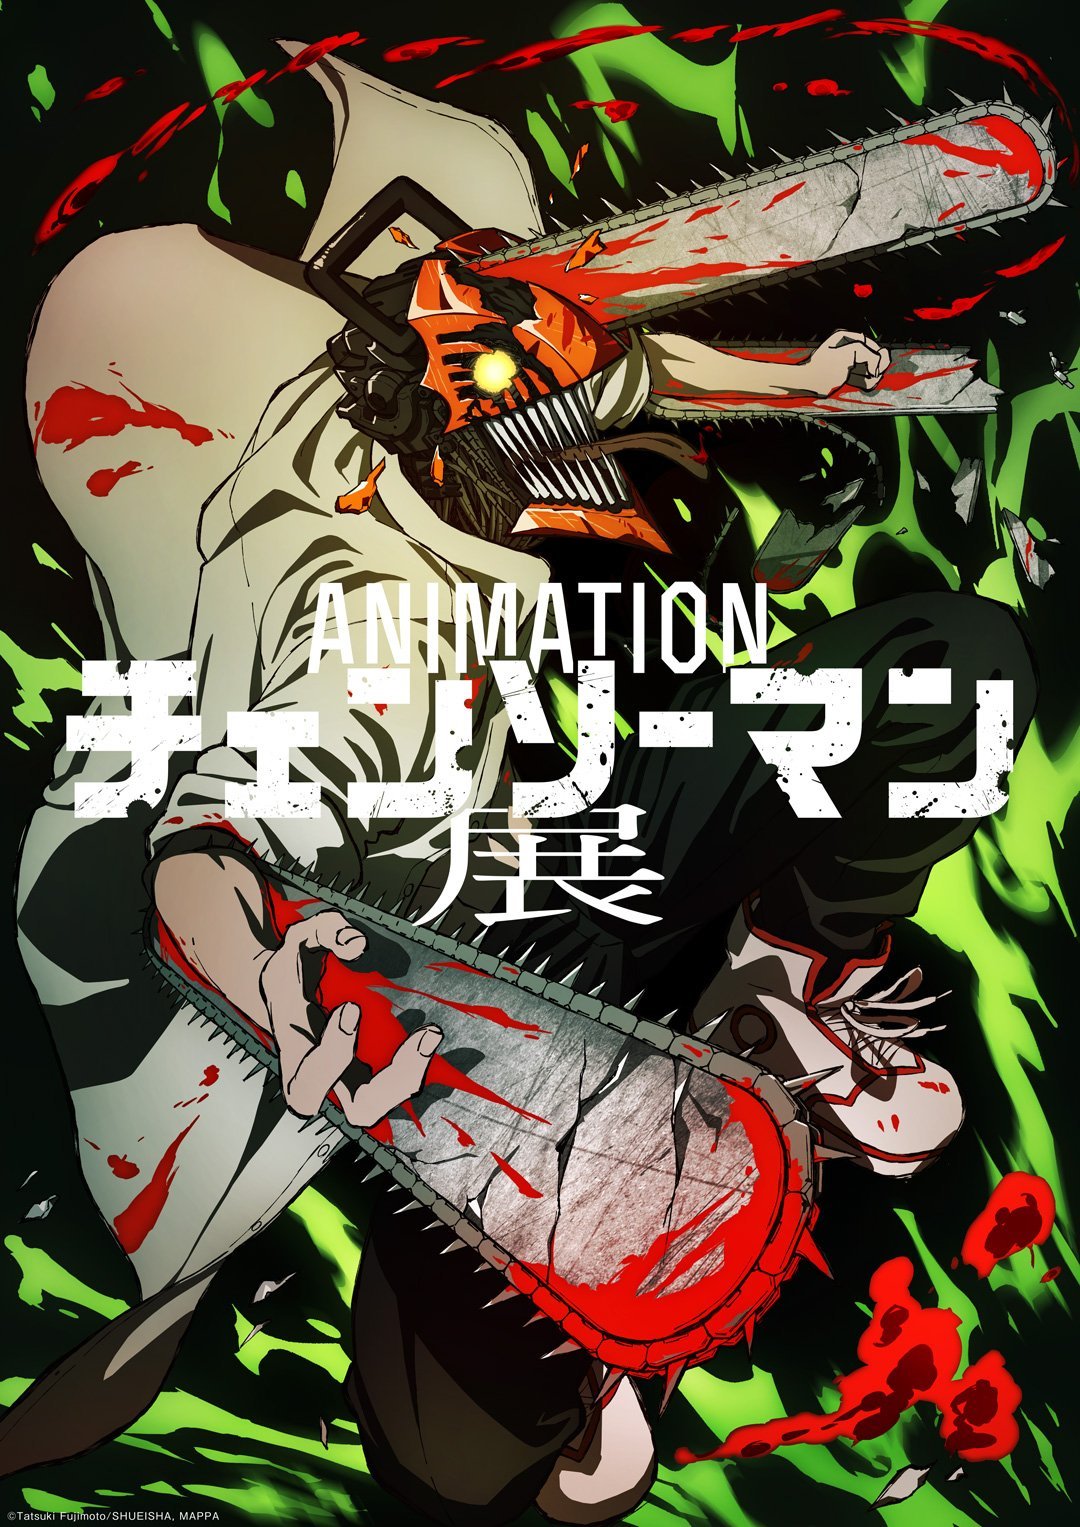 Anime : Chainsaw Man - #animesdublado #onepiece #chainsawman